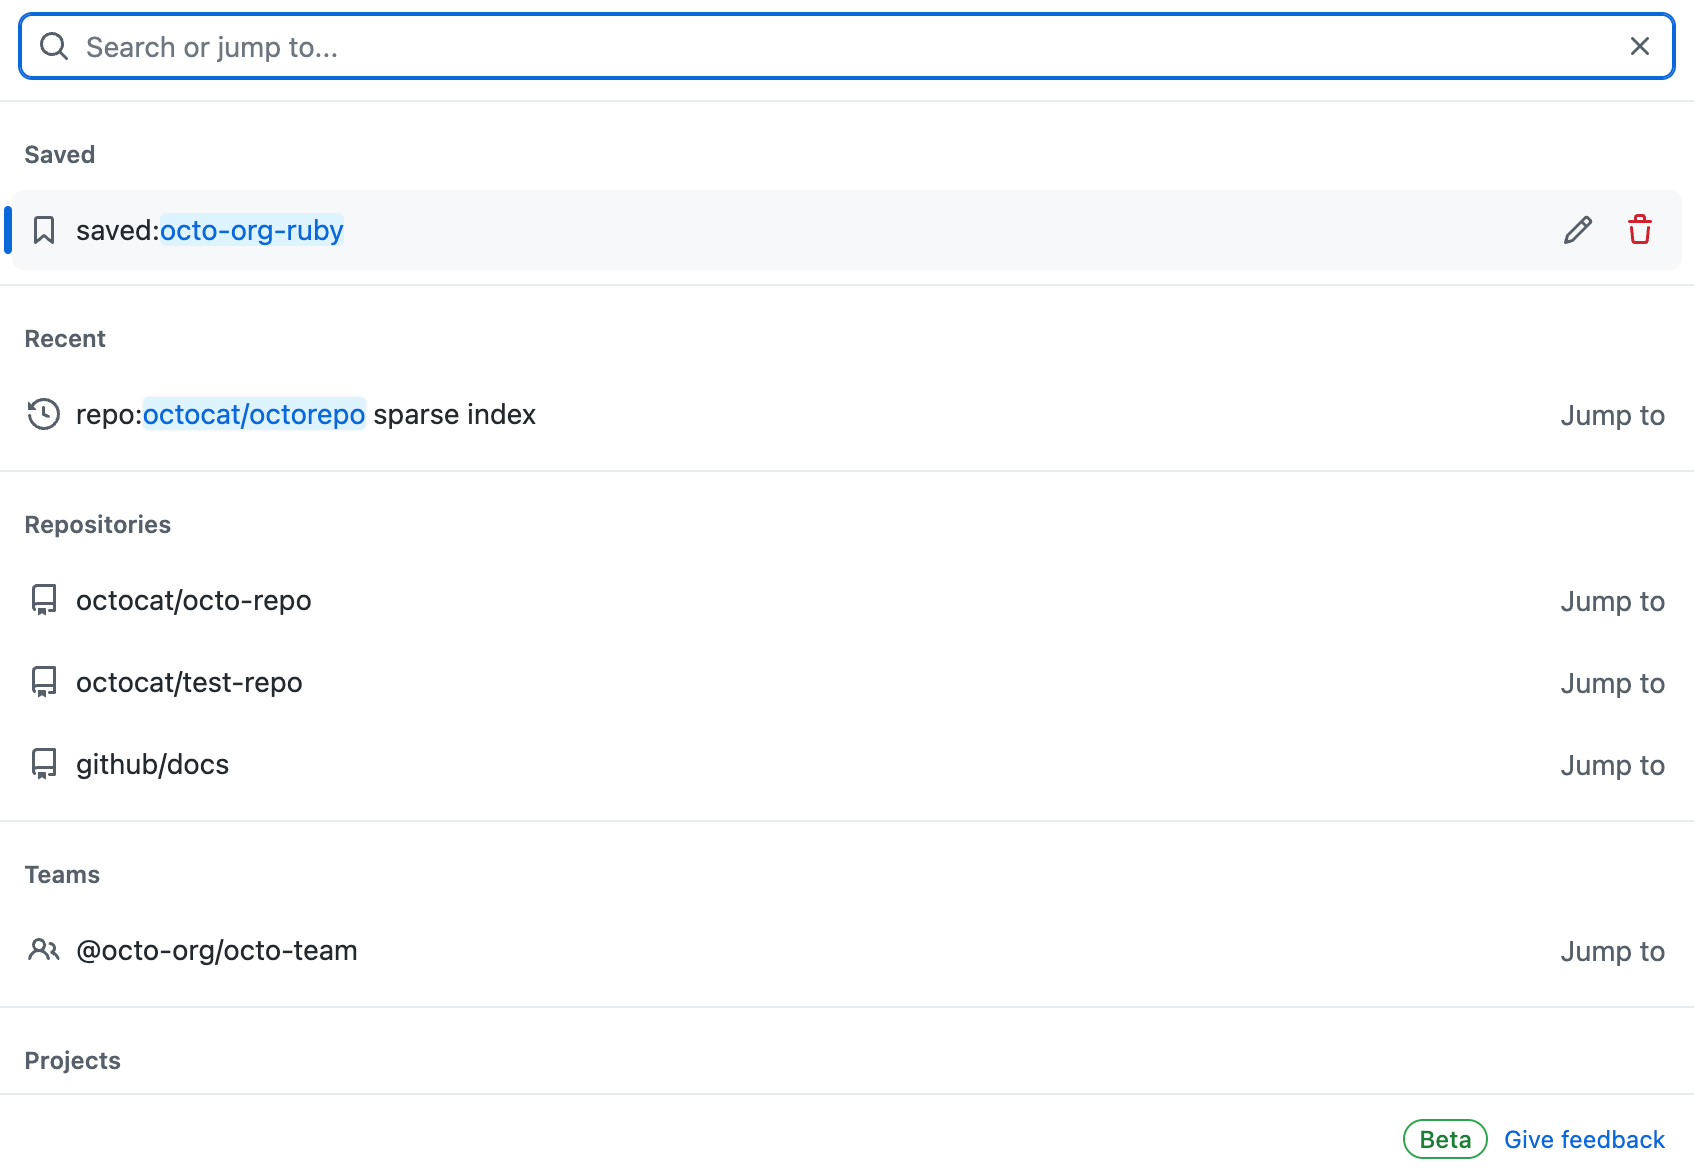 Снимок экрана: панель поиска GitHub. Под строкой поиска есть список вариантов поиска по категориям.